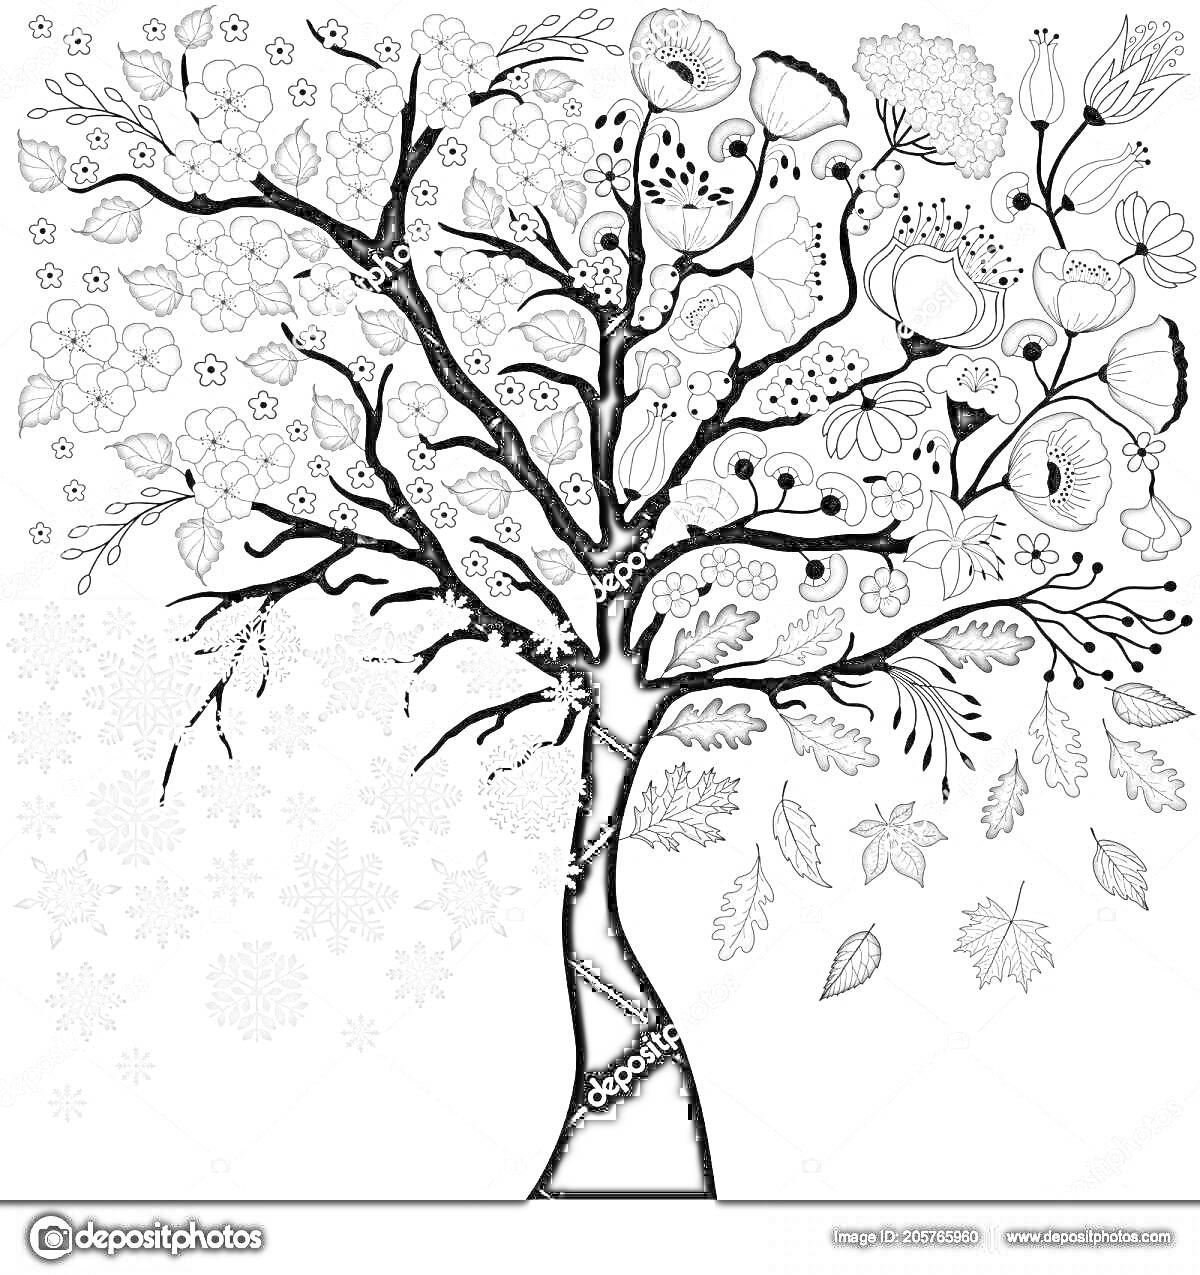 Дерево с цветами, листьями и снежинками, изображающее времена года